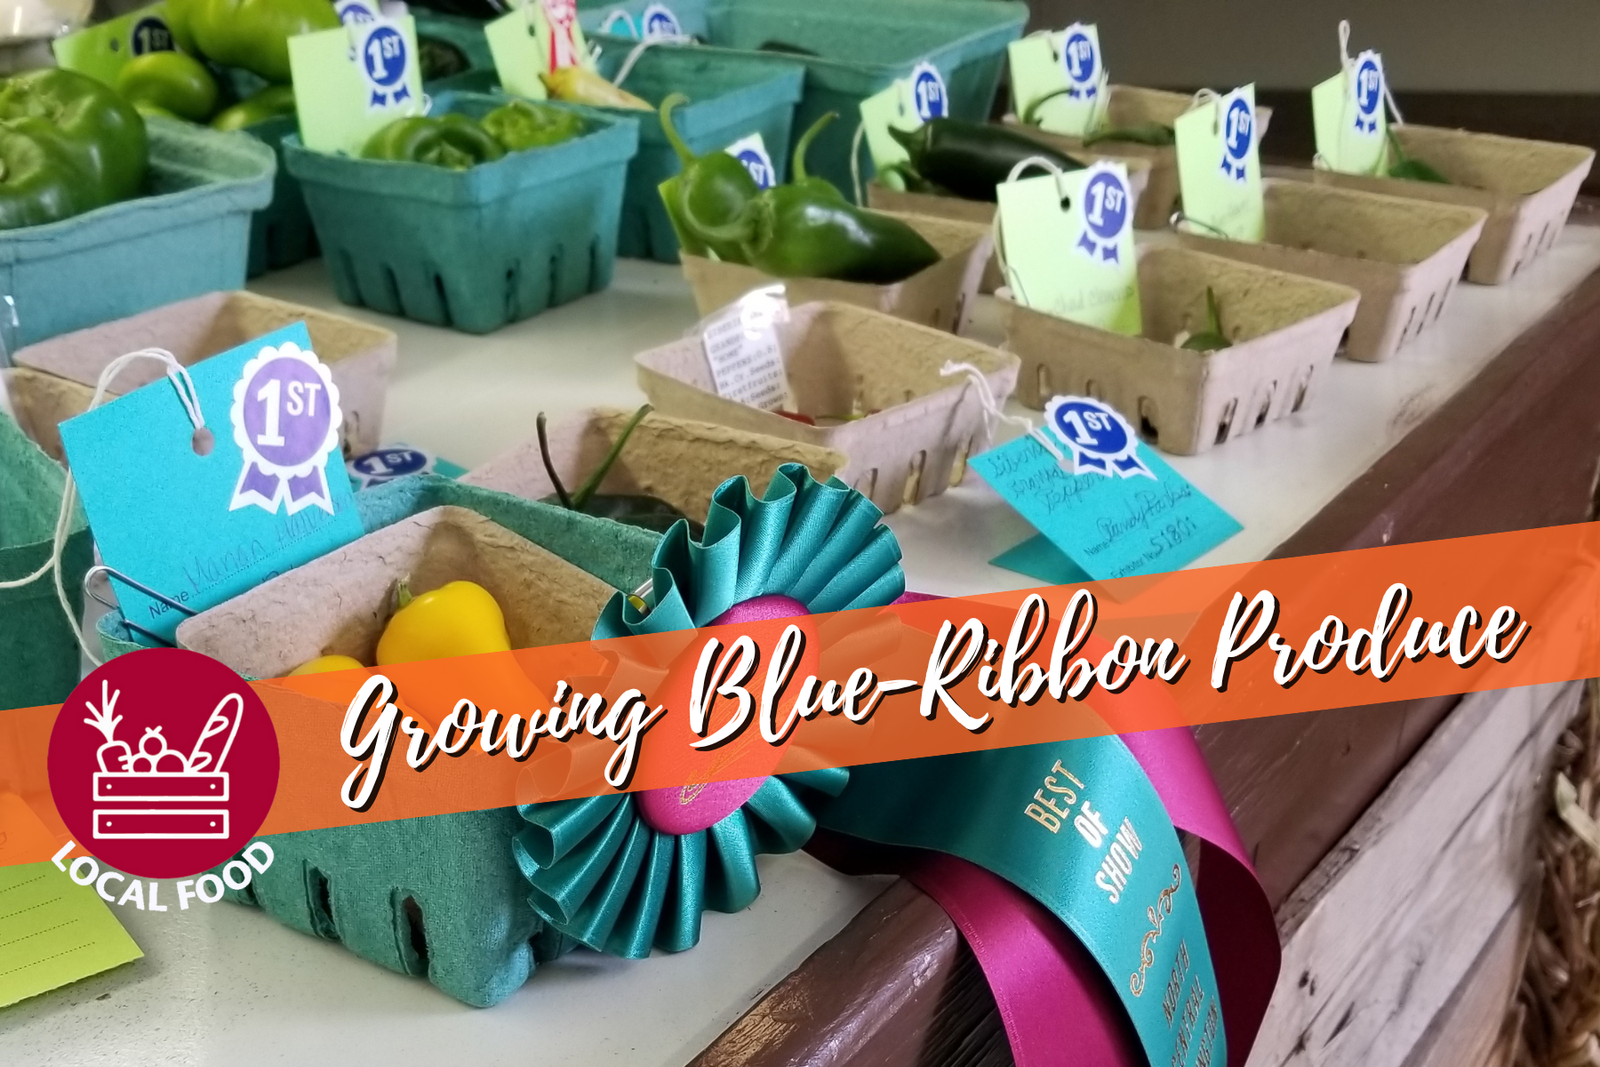 Blue ribbon produce.